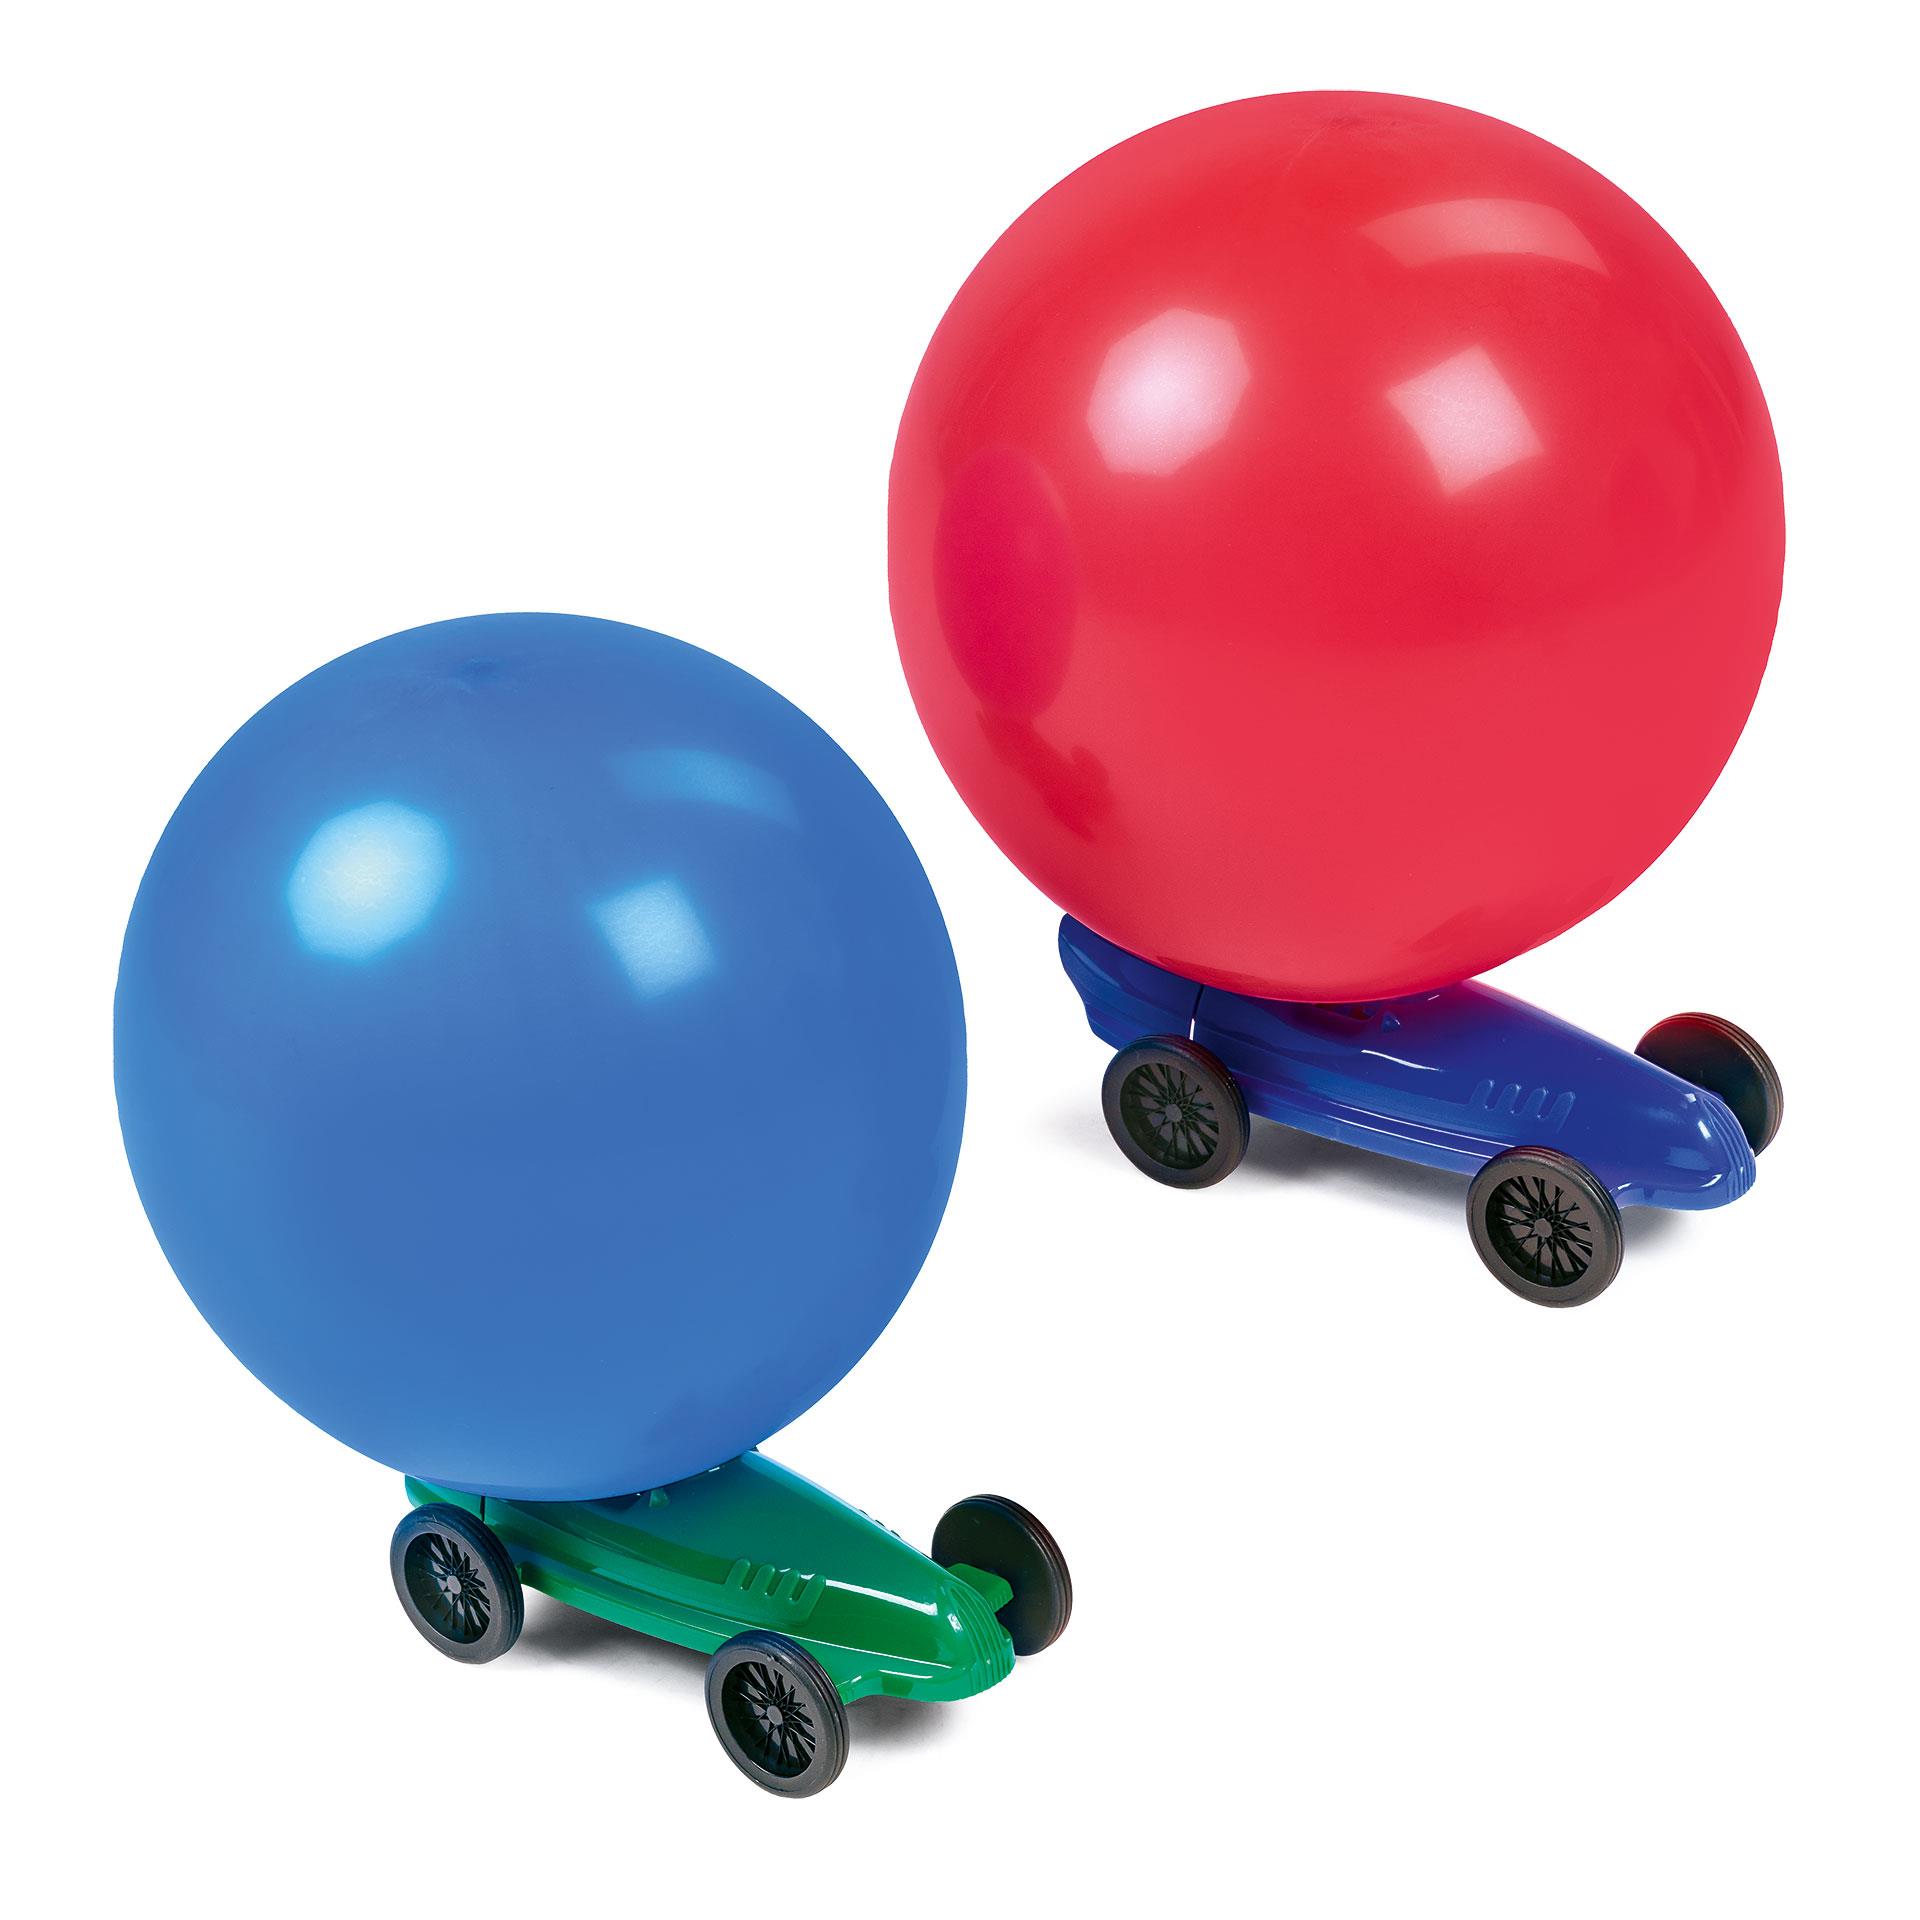 Zwei Ballonautos mit aufgeblasenen Ballonen